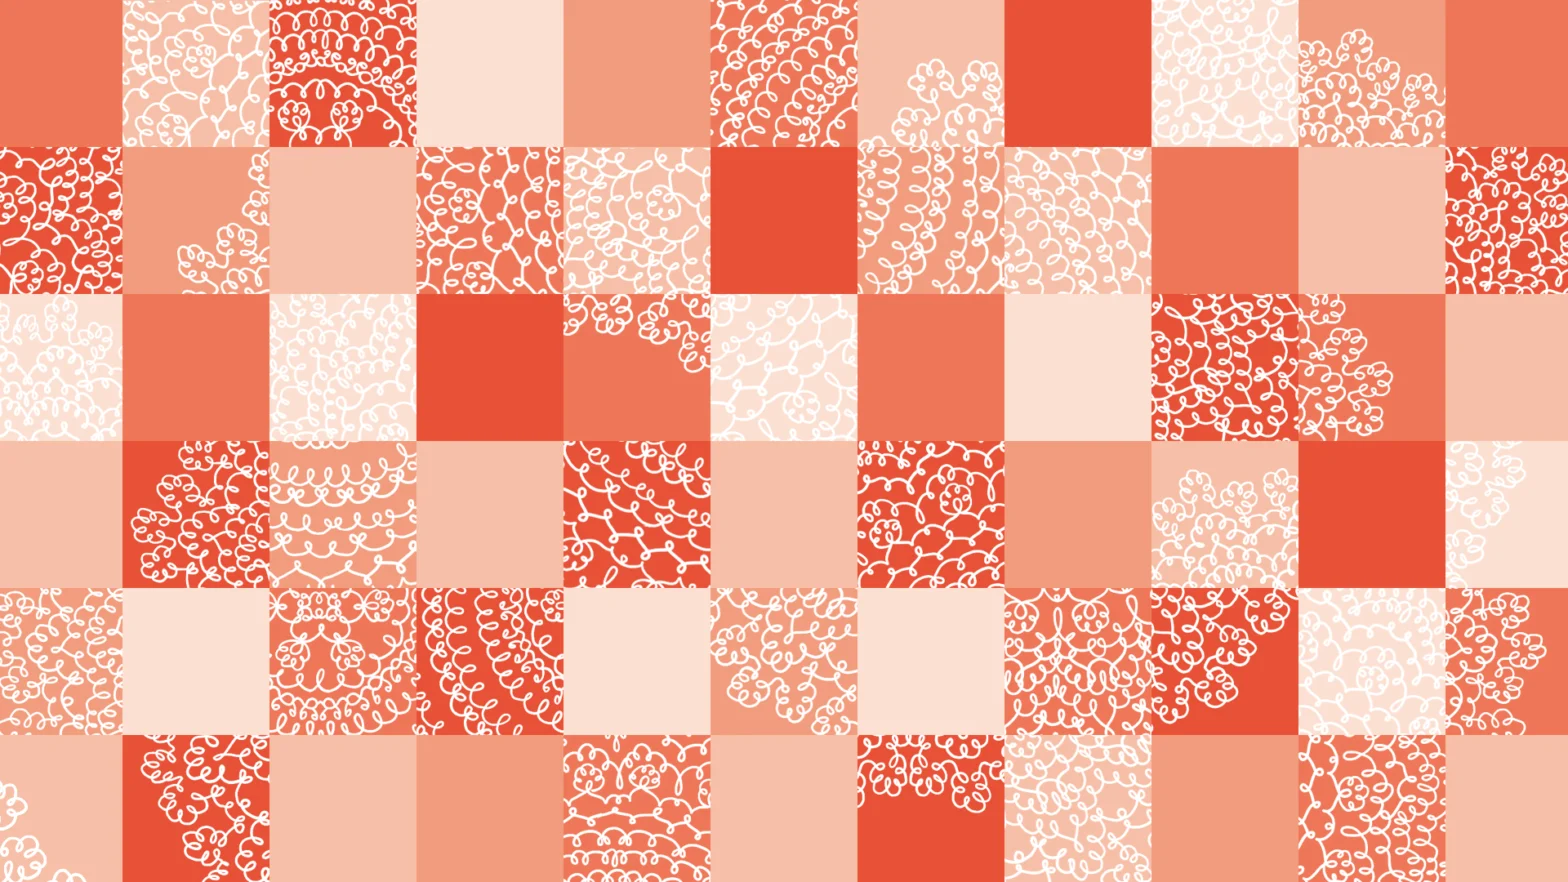 Grafika w małe kwadraty w różnych odcieniach pomarańczy. W poszczególnych kwadratach znajdują się fragmenty narysowanej koronkowej serwetki